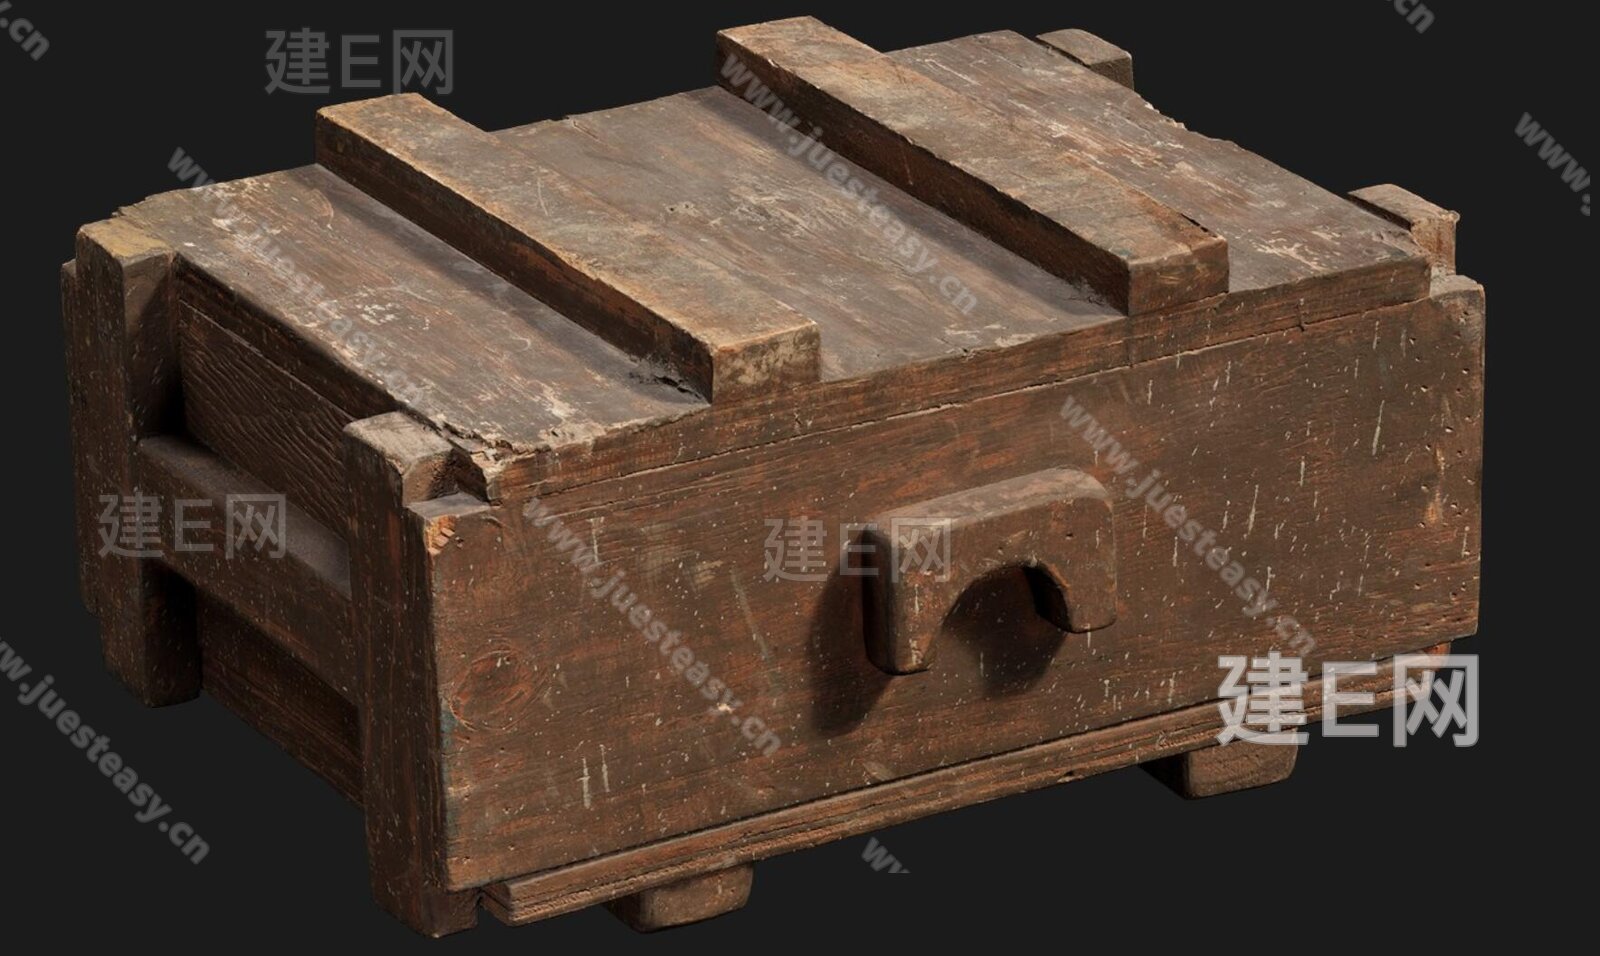 上海木箱加工_上海木箱定做_上海木箱包装_上海木箱包装厂_主营上海木箱加工,上海木箱包装,上海木箱包装厂_位于上海市嘉定区_一比多